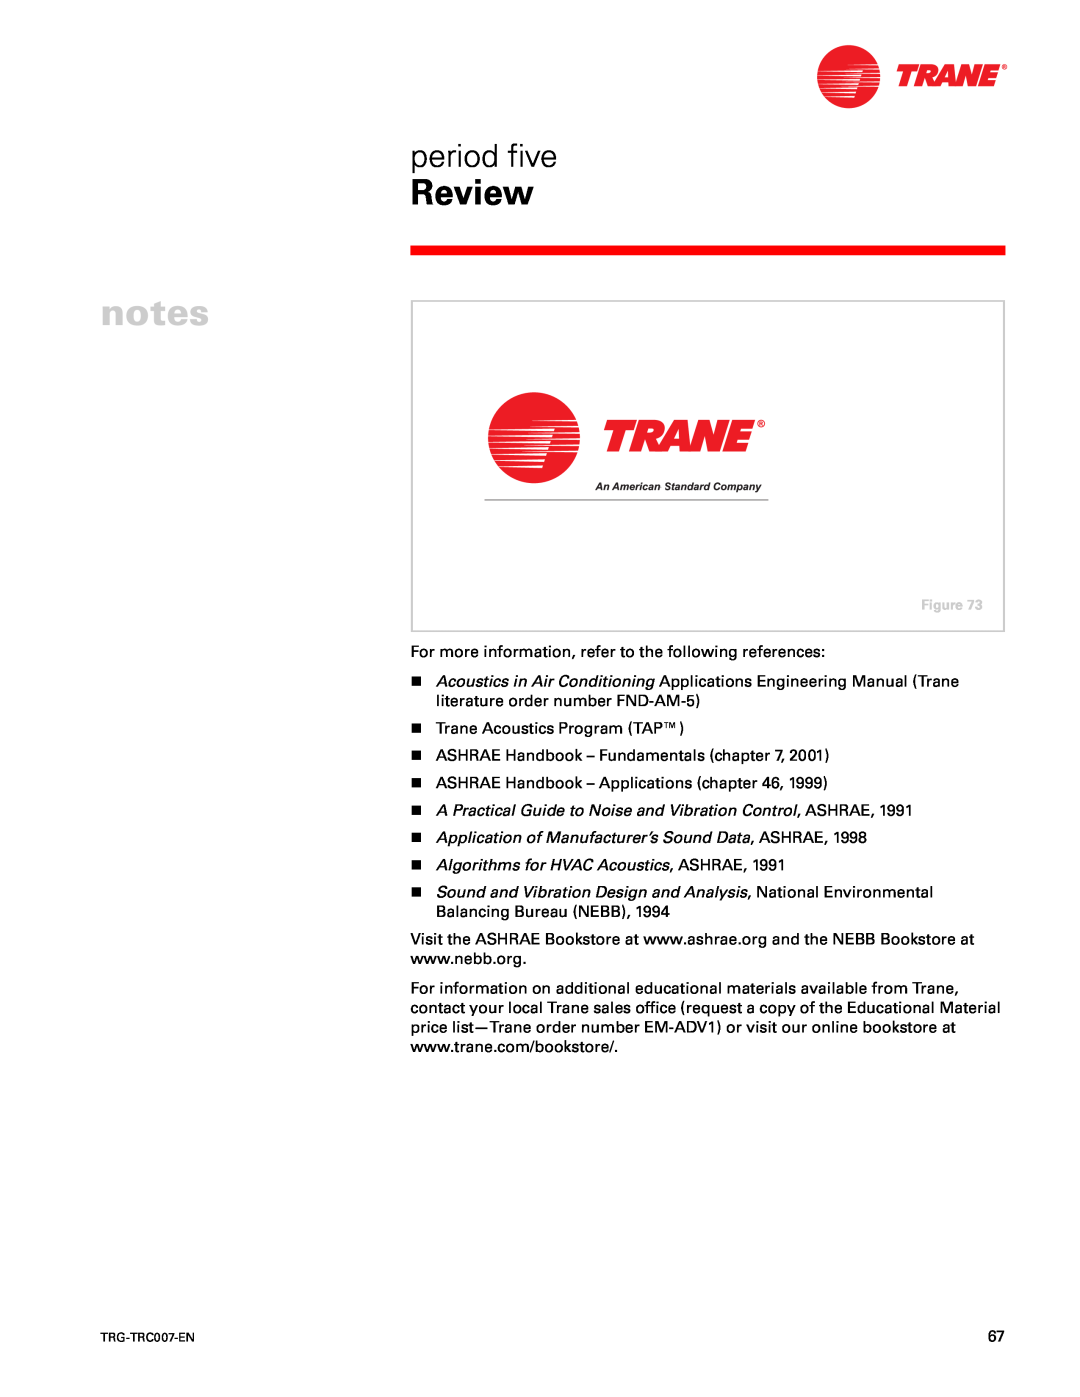 Trane TRG-TRC007-EN manual Review, period five, nTrane Acoustics Program TAP 